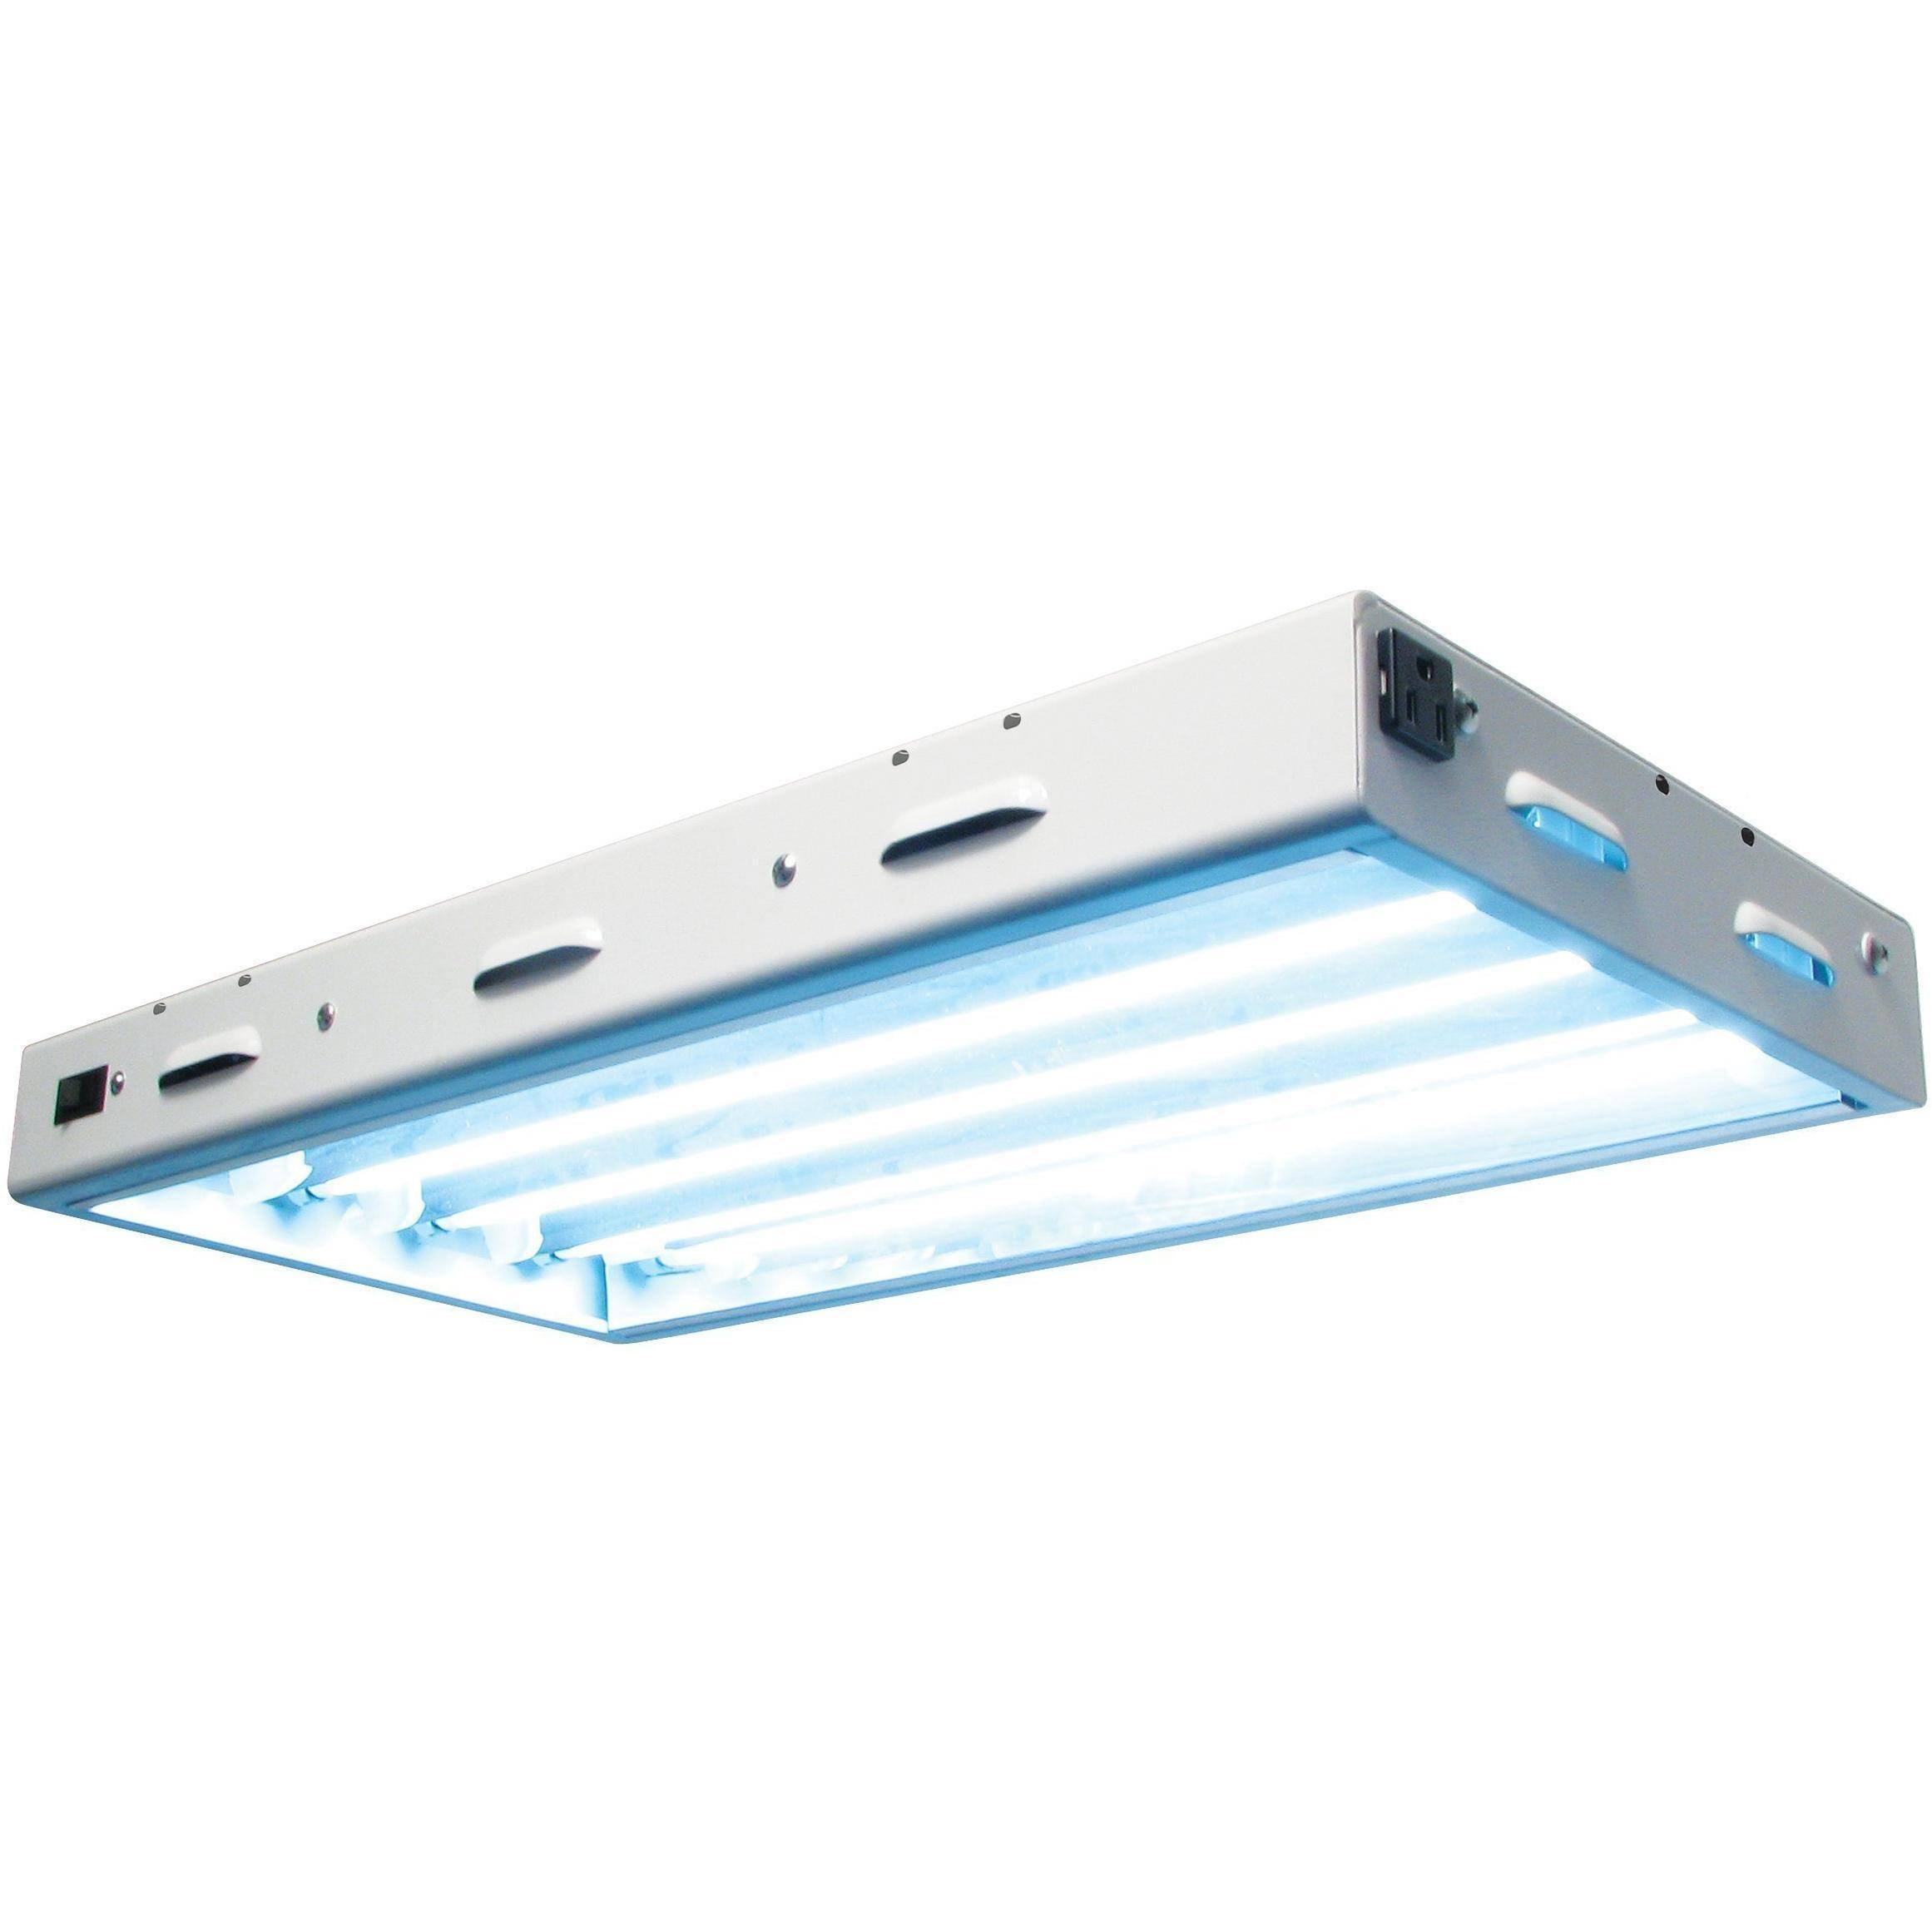 Sun Blaze 960295 T5 High Output Fluorescent Lighting Fixture - With 4 Lamps, 2'